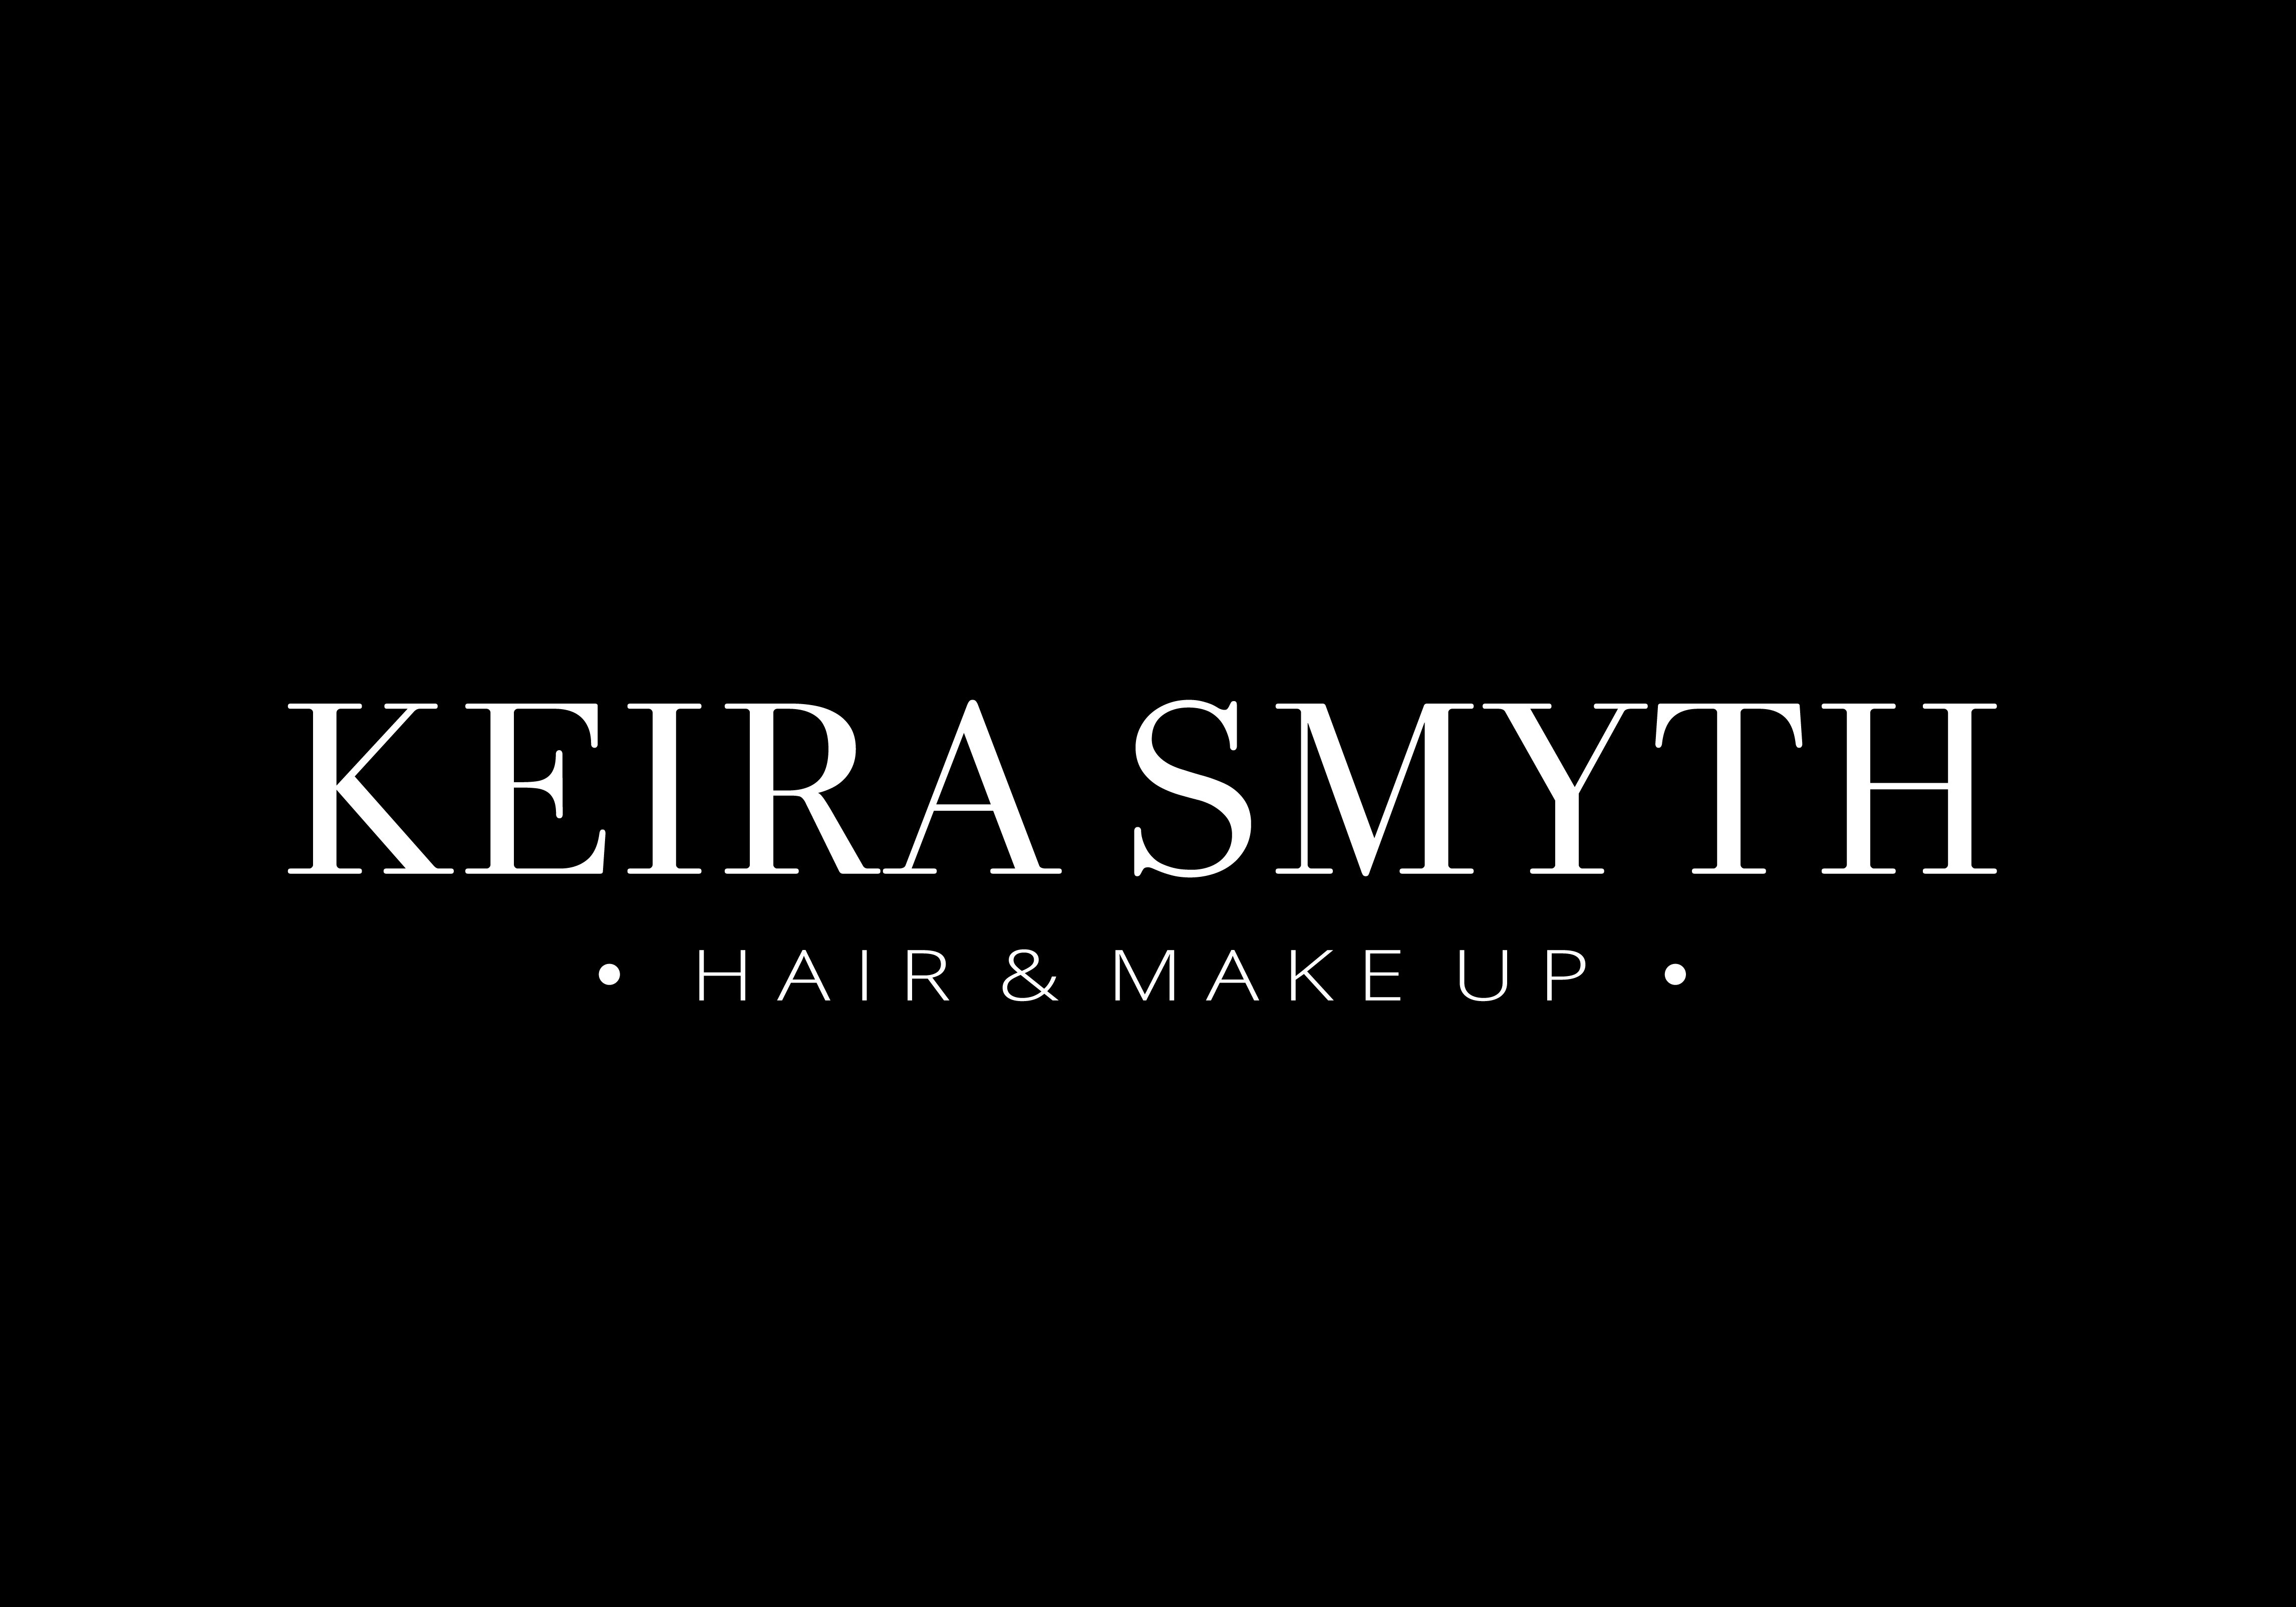 Keira Smyth Hair & Make up